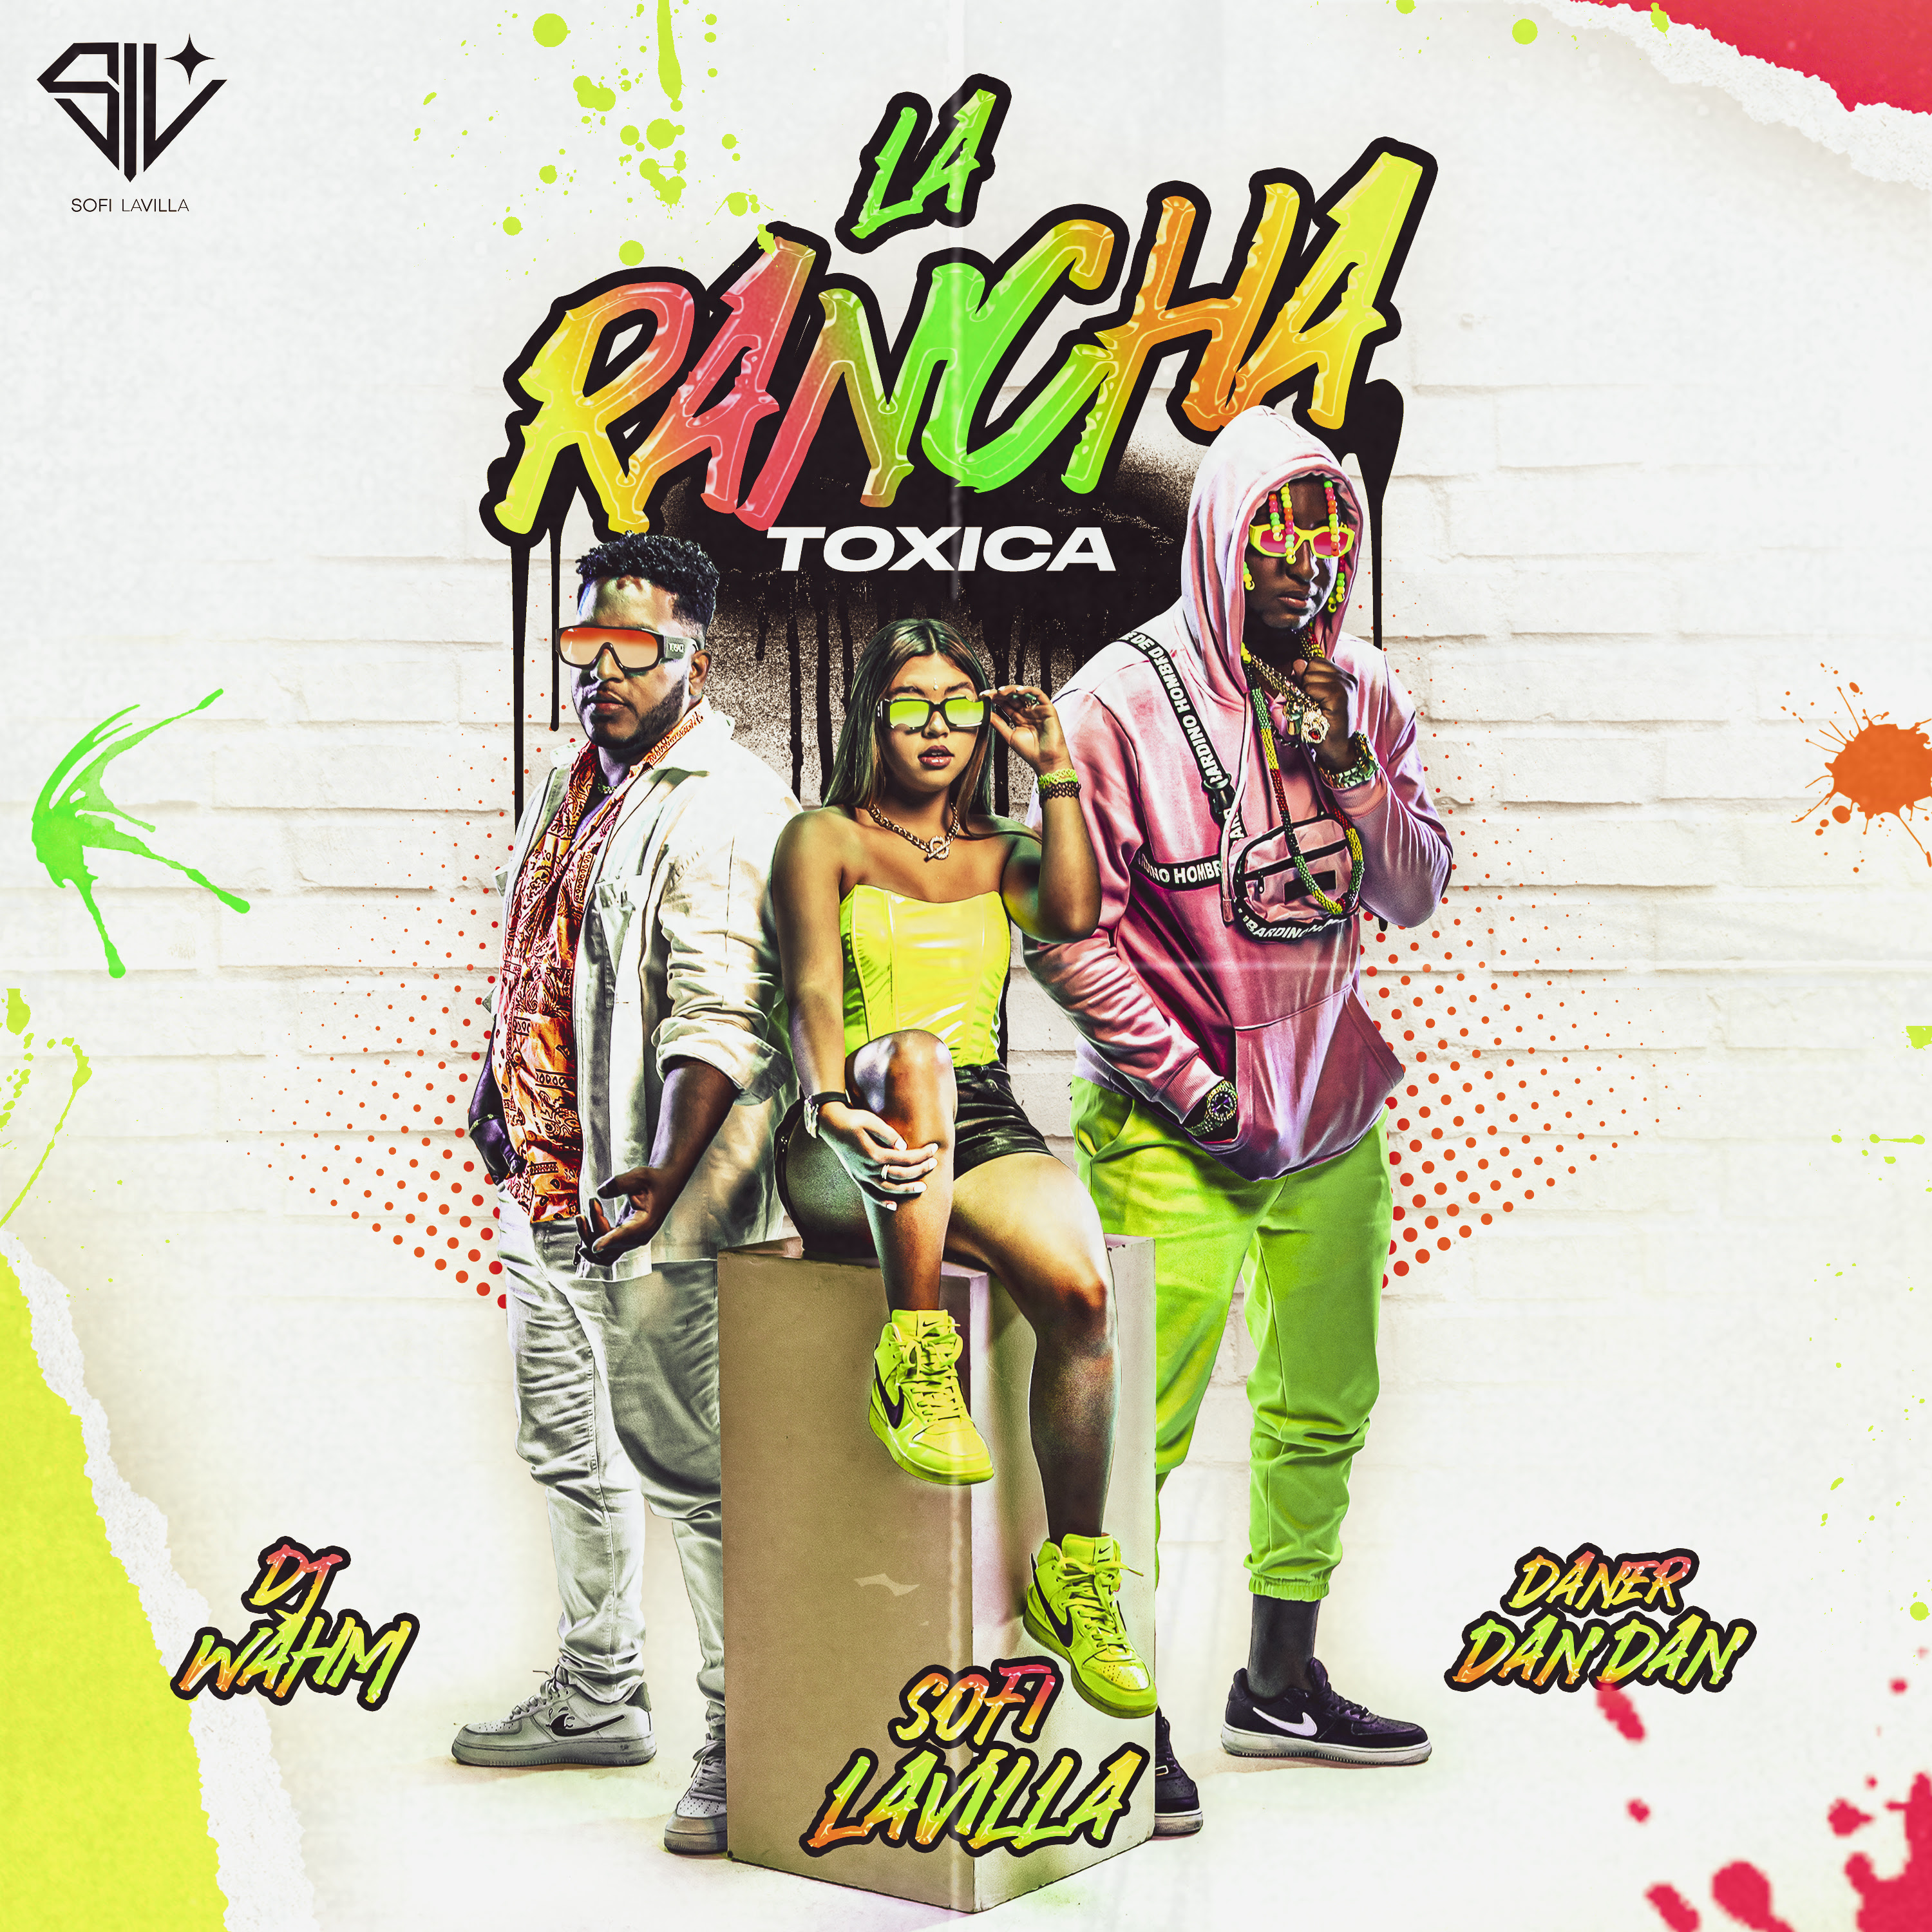 Sofi LaVilla presenta su nuevo sencillo «La Rancha» junto a Daner Dan Dan y Dj Wahm